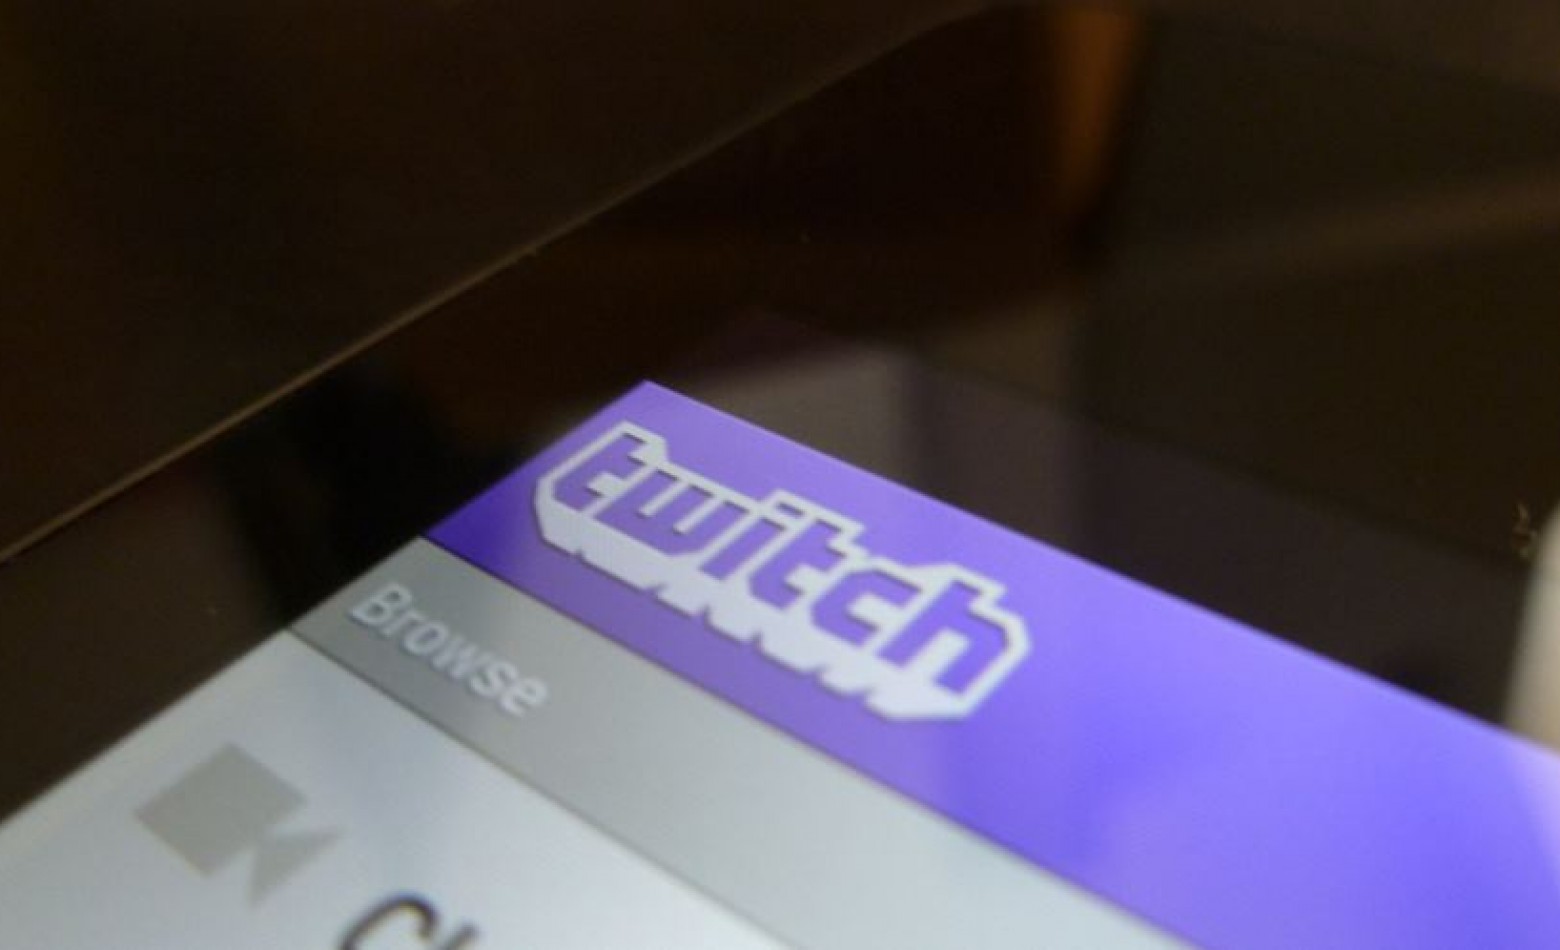 Após problemas de segurança, Twitch pede que todos mudem suas senhas